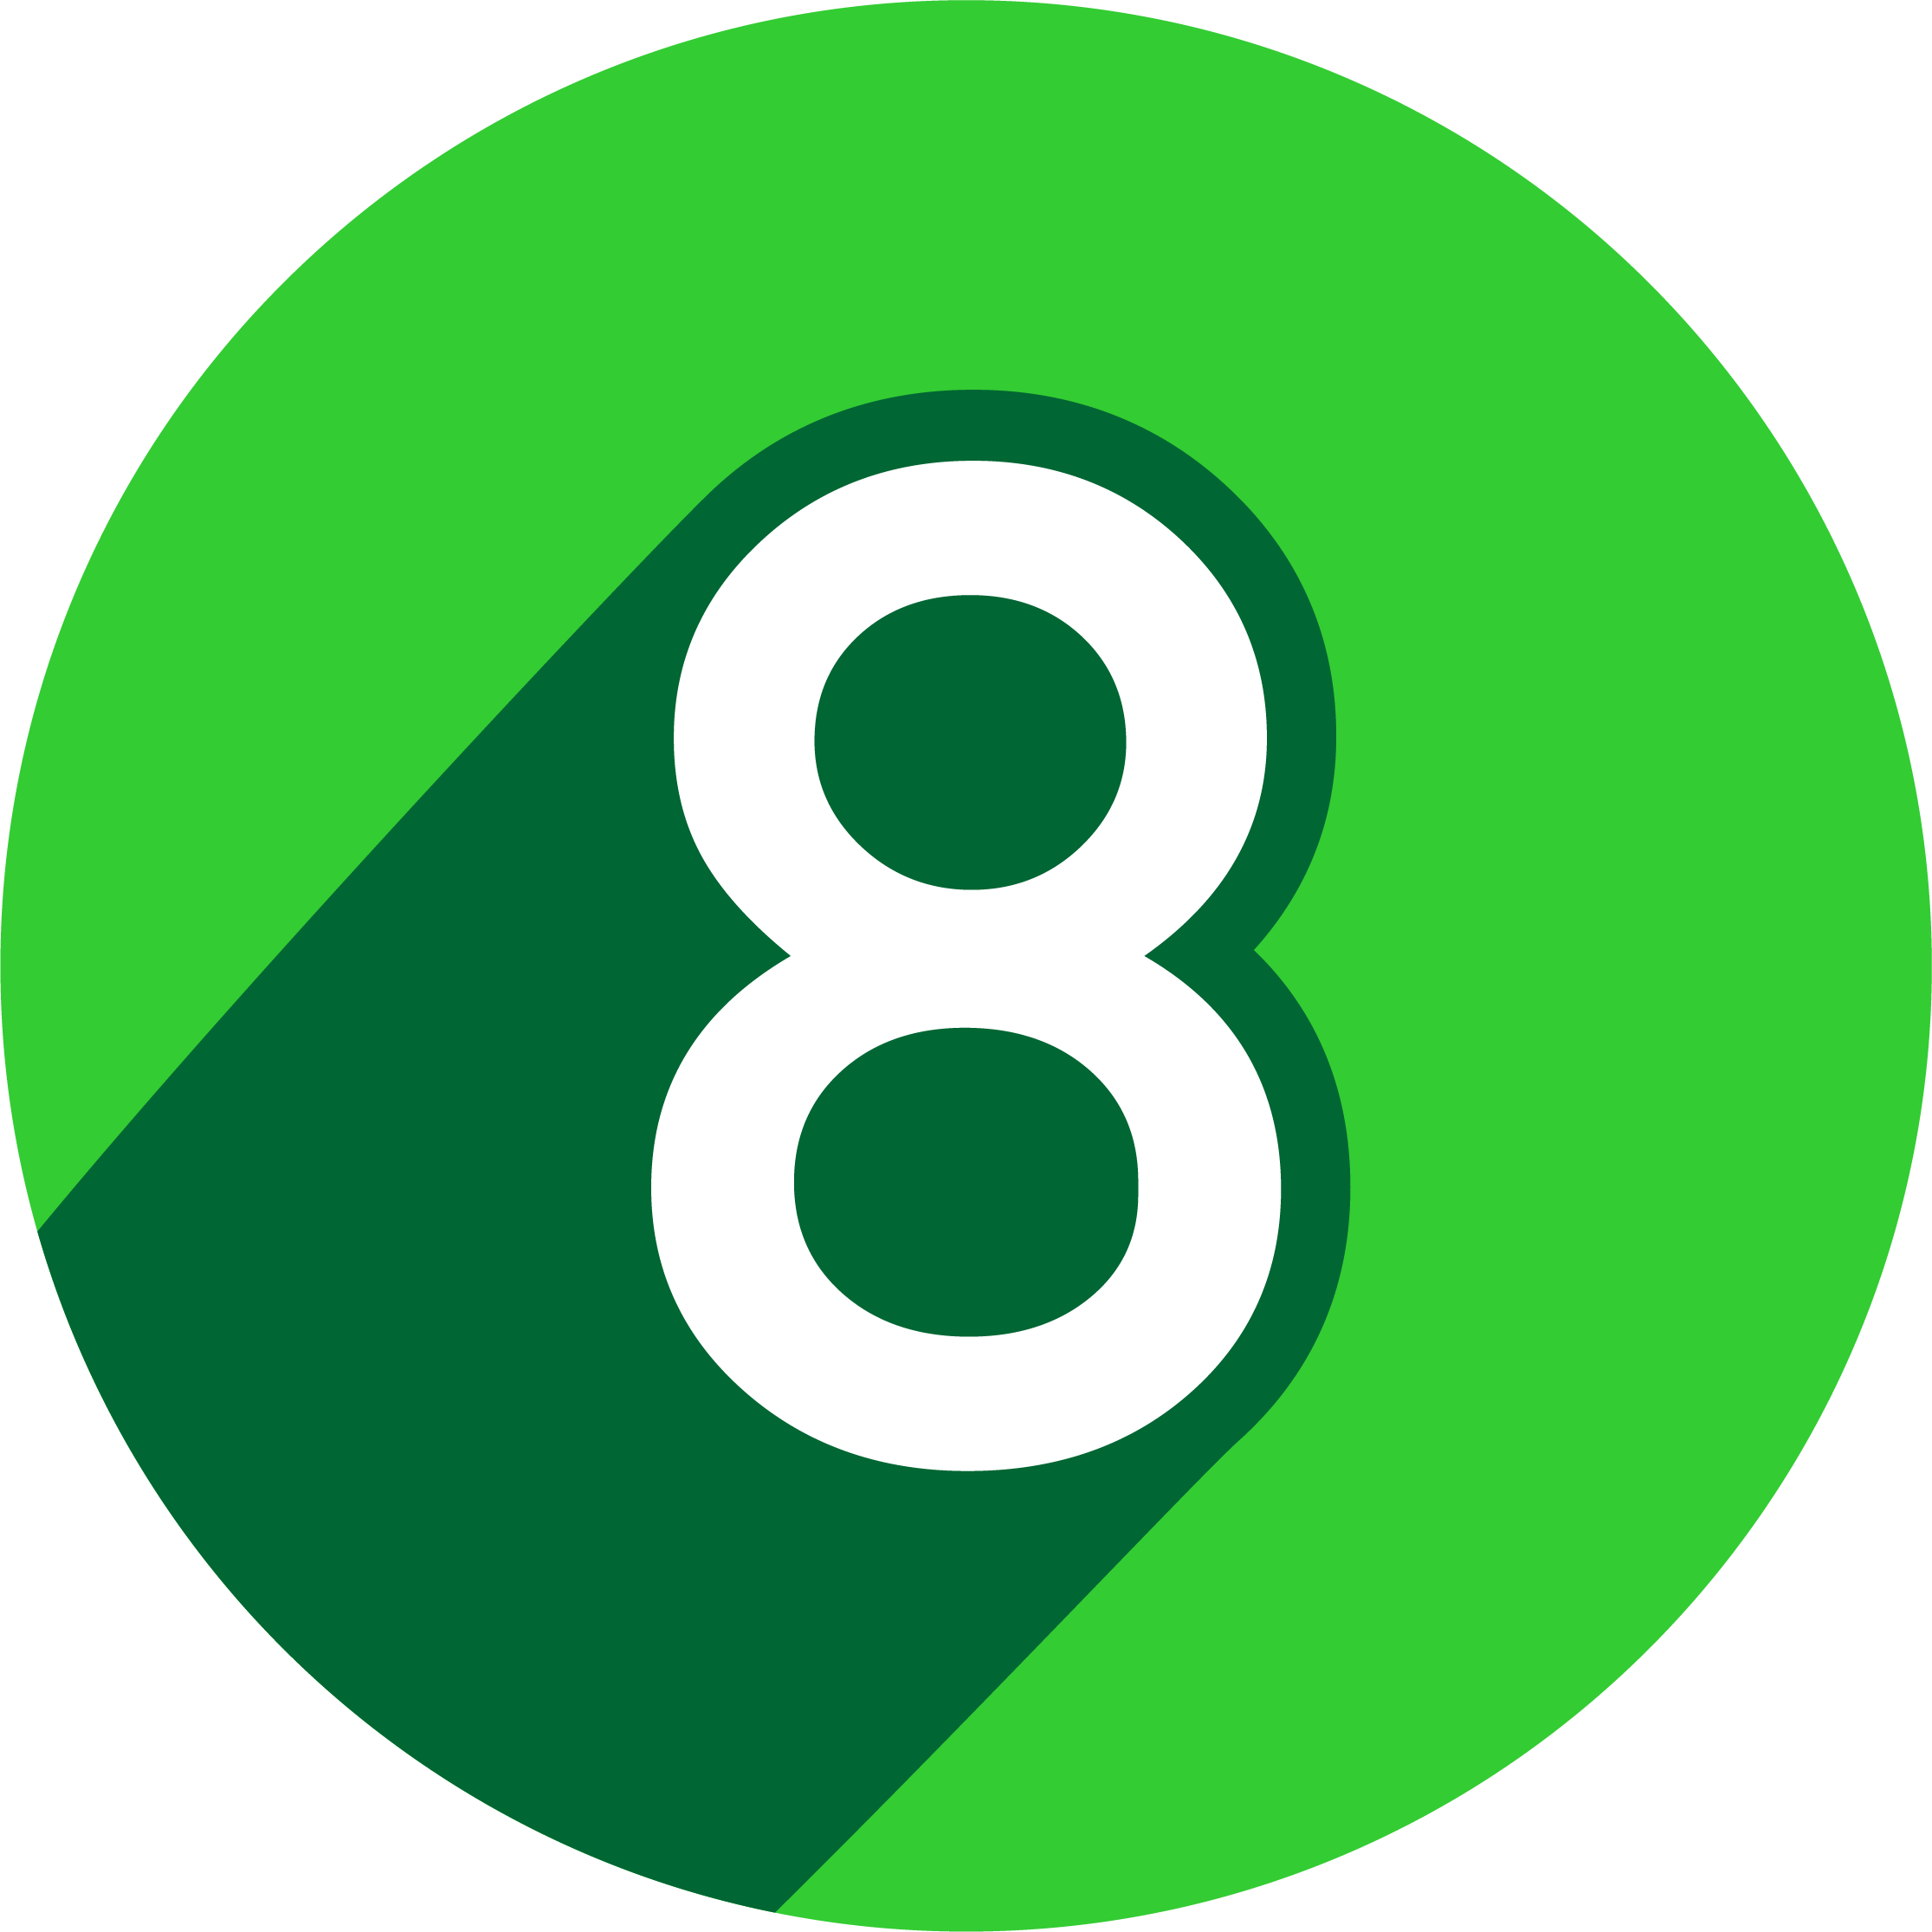 Eight Ball Green - Glyph 4x